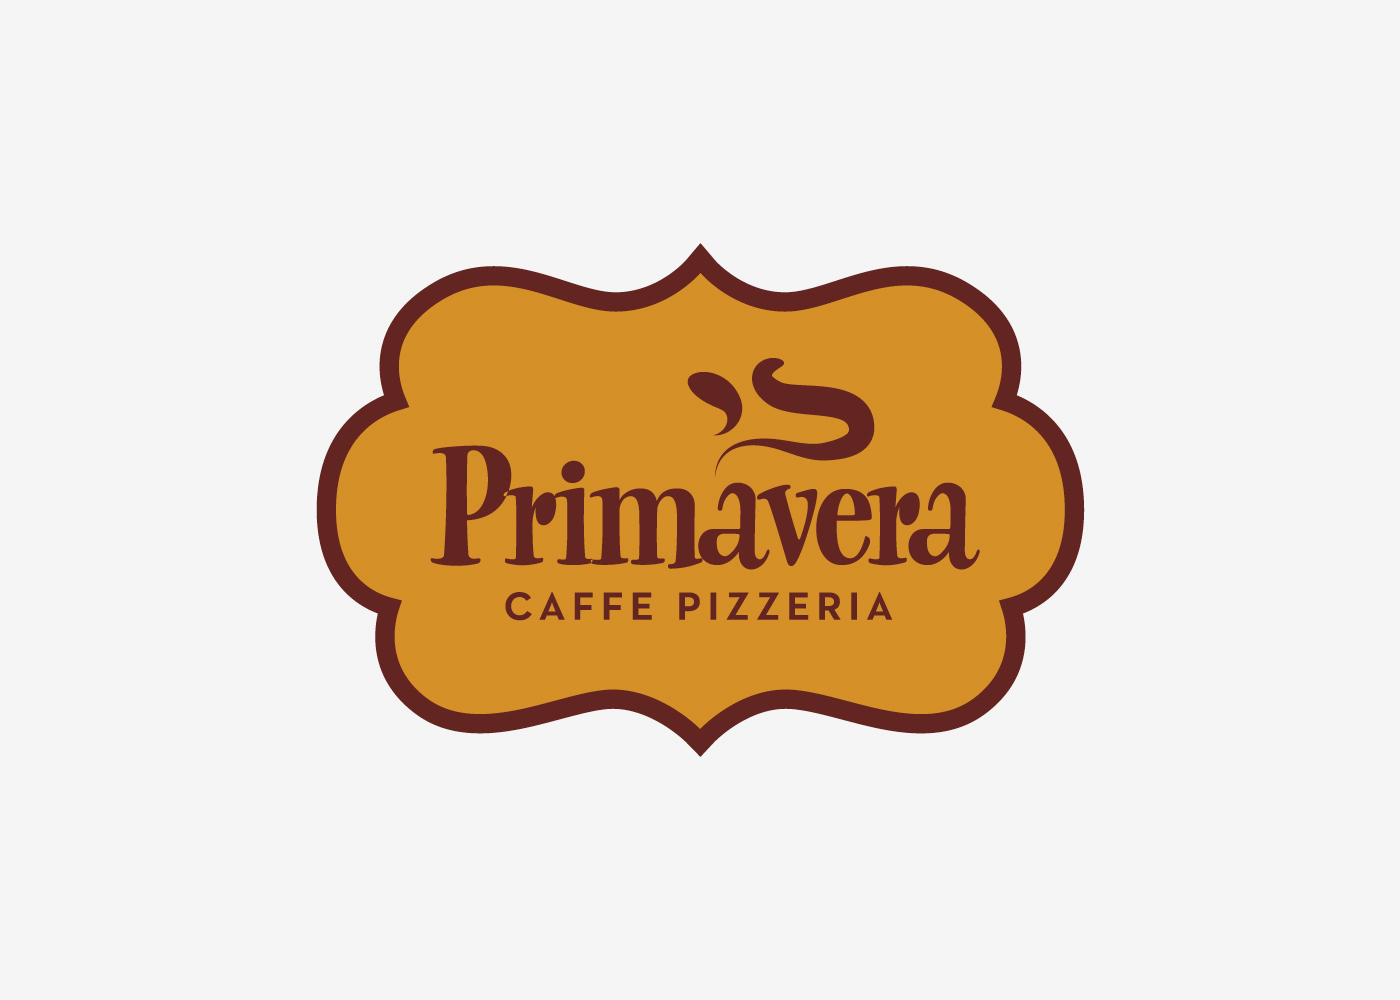 Vizualni identitet pizzerije Primavera